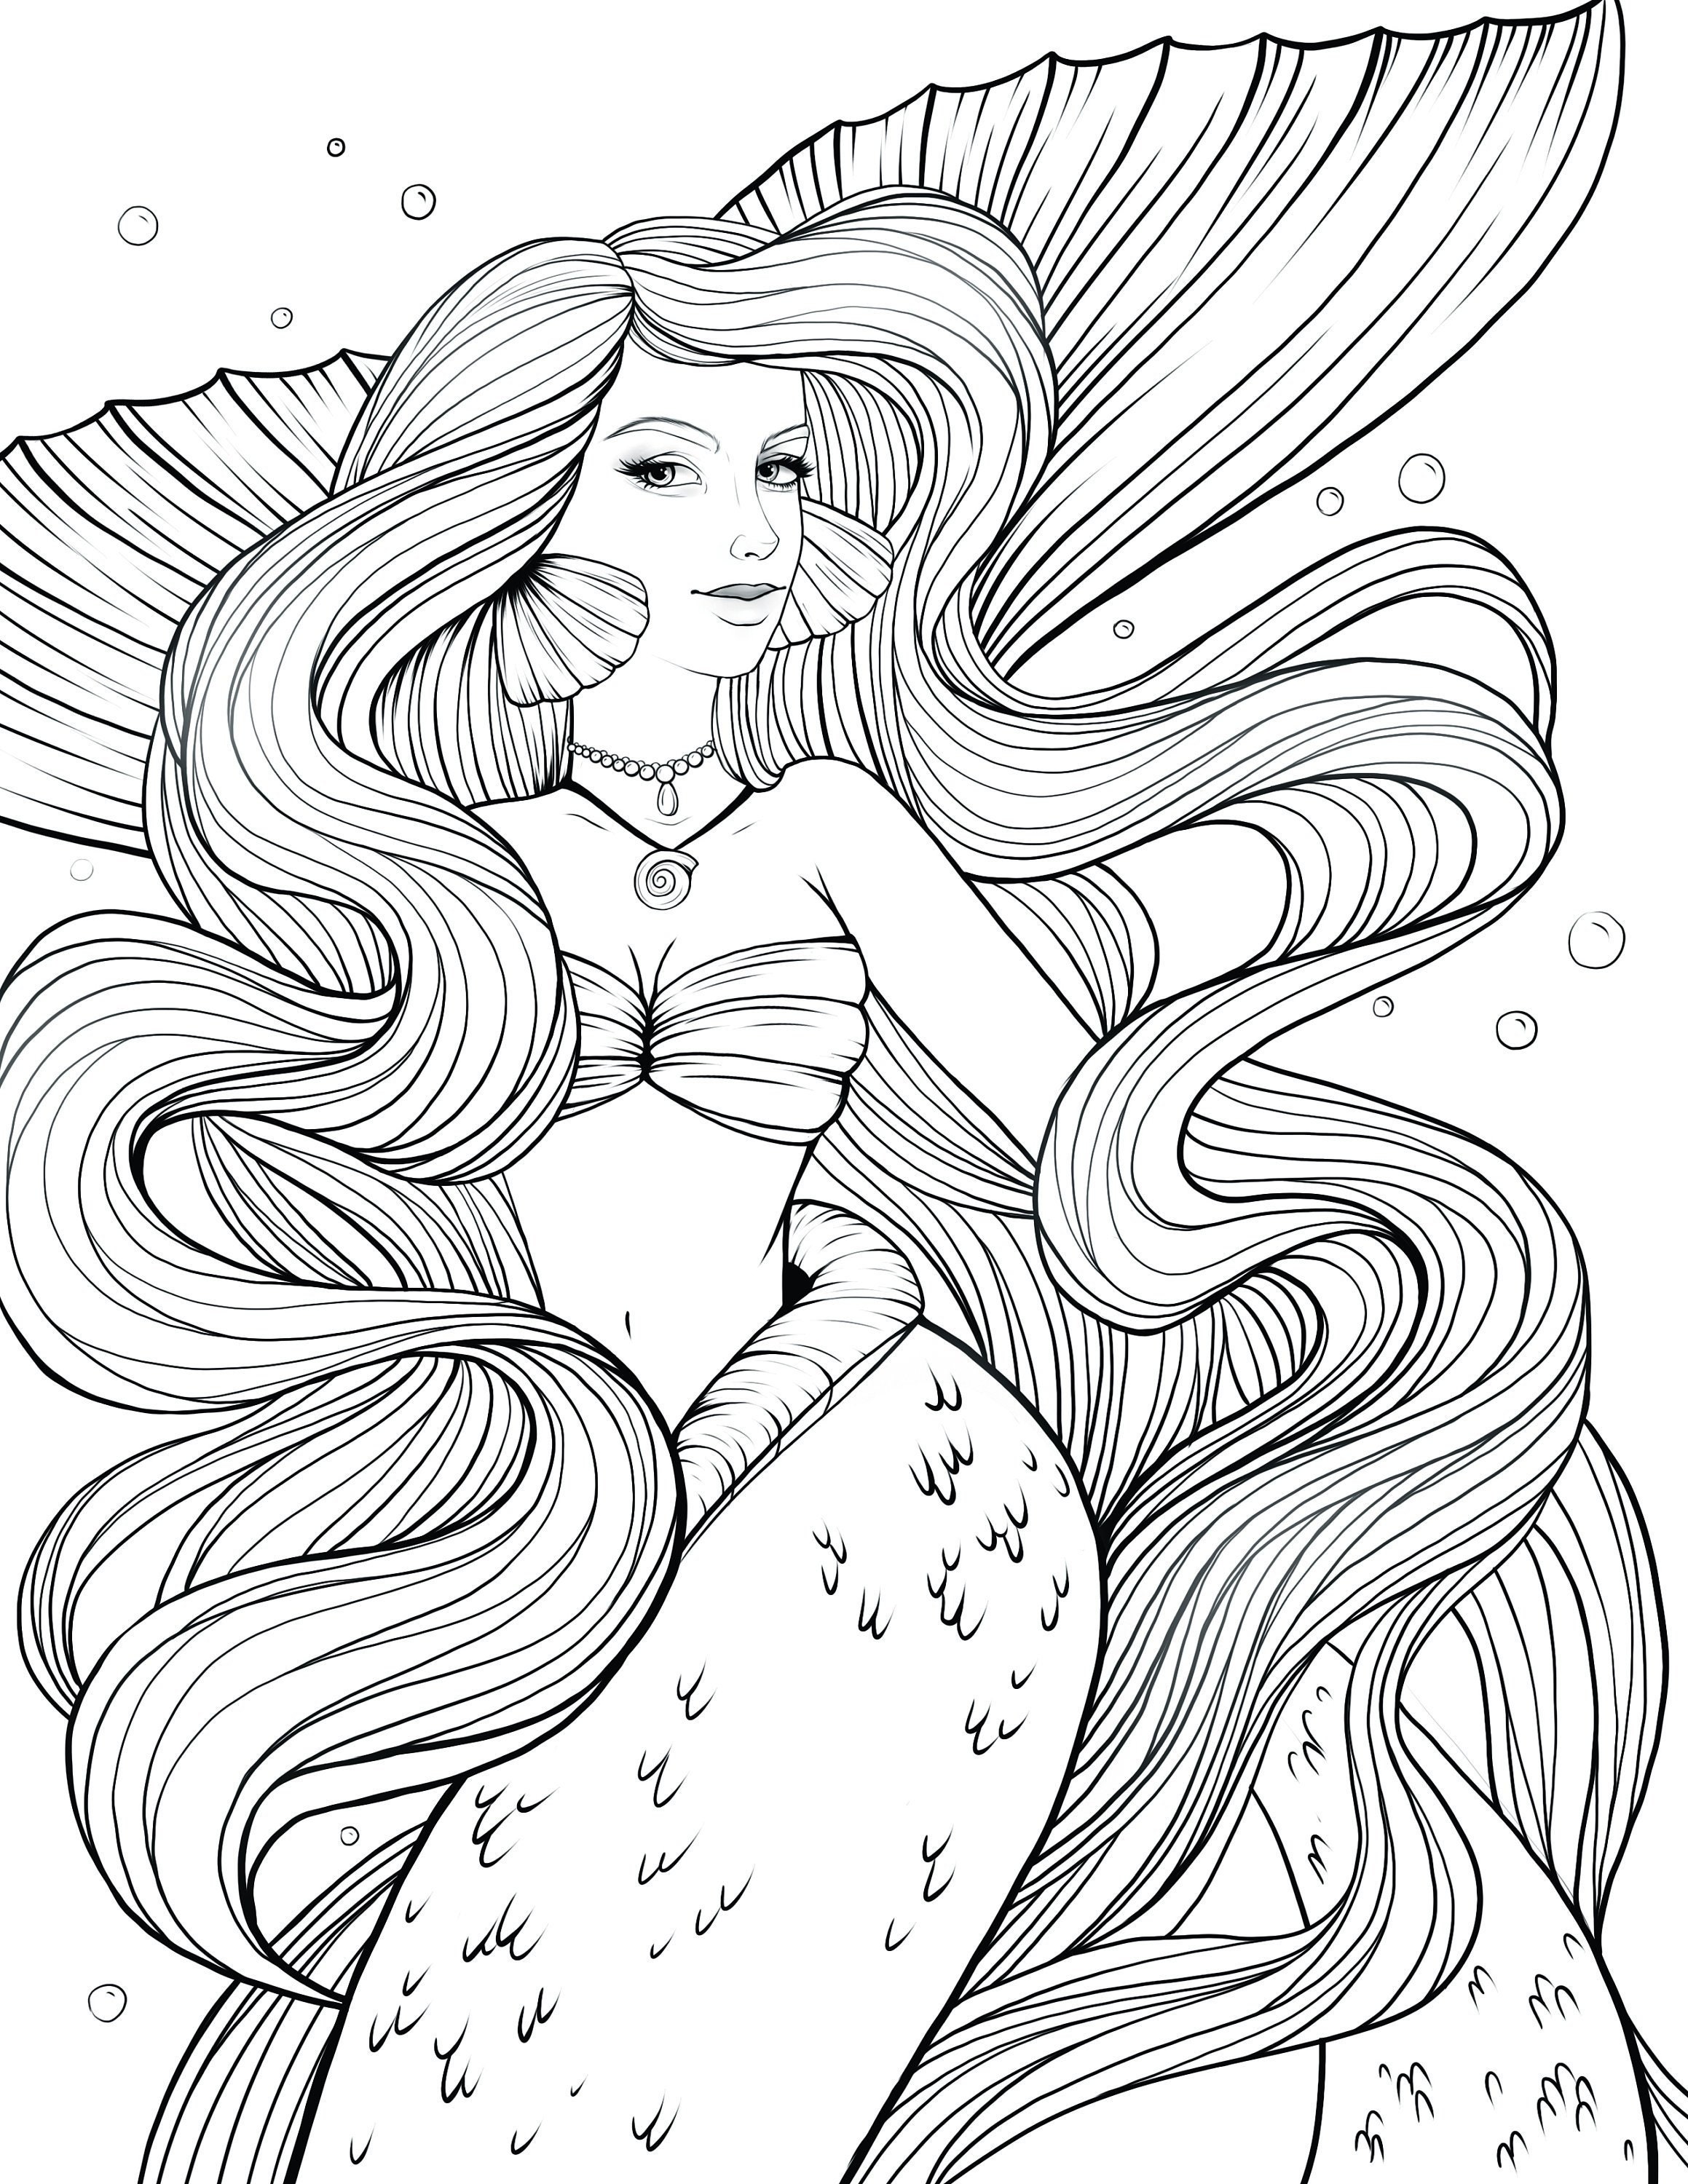 mermaid-coloring-page-printable